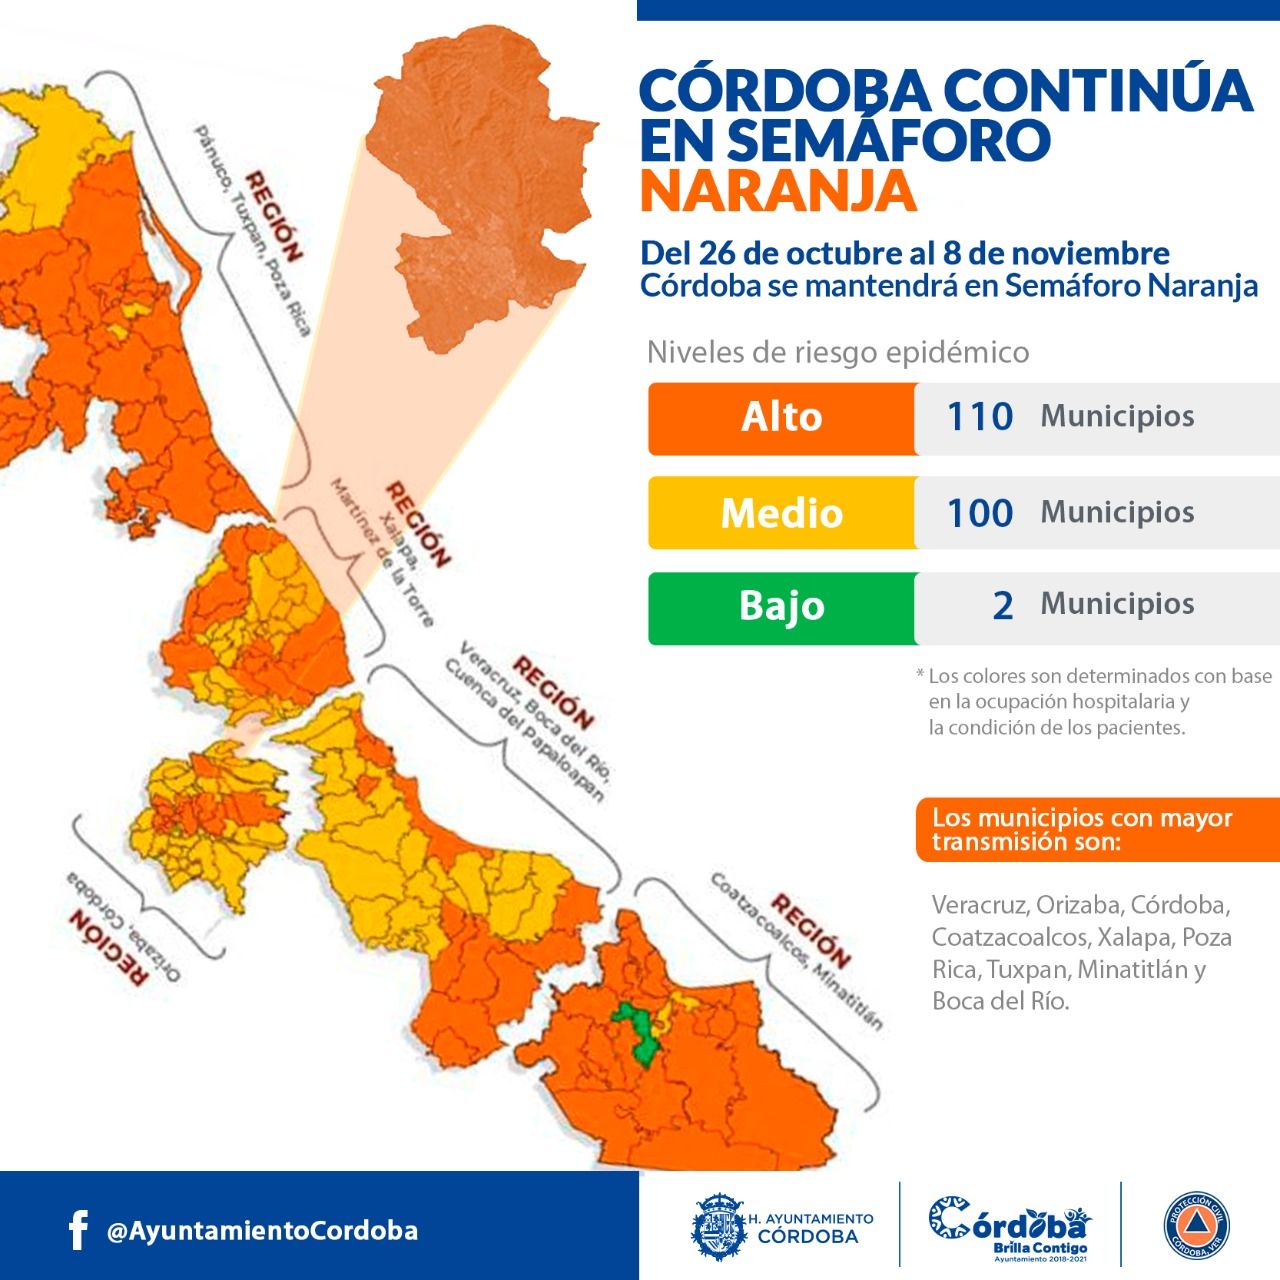 Continua Córdoba en semáforo naranja: UMPC

- Importante que población no baje la guardia.